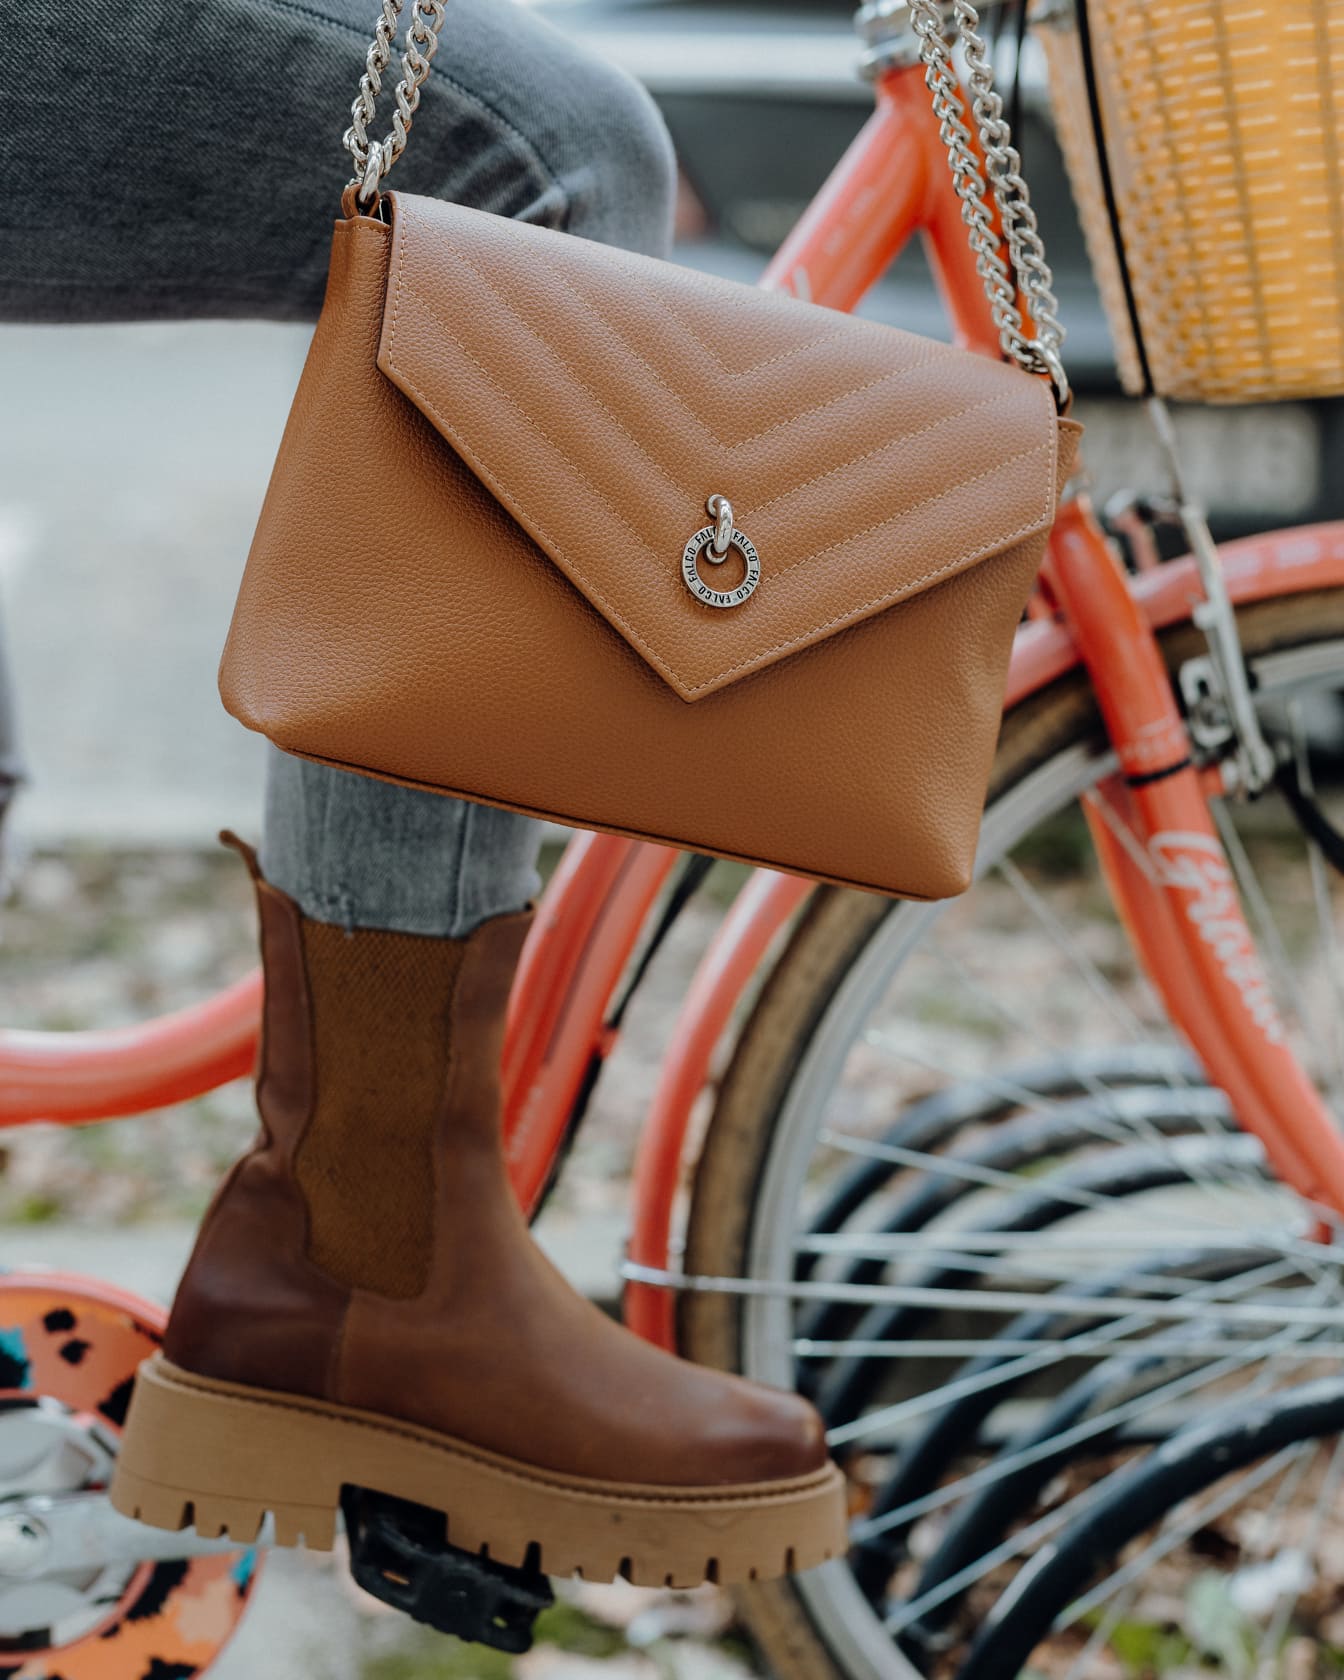 Zbliżenie na nogę osoby siedzącej na rowerze w brązowych butach i trzymającej brązową torebkę